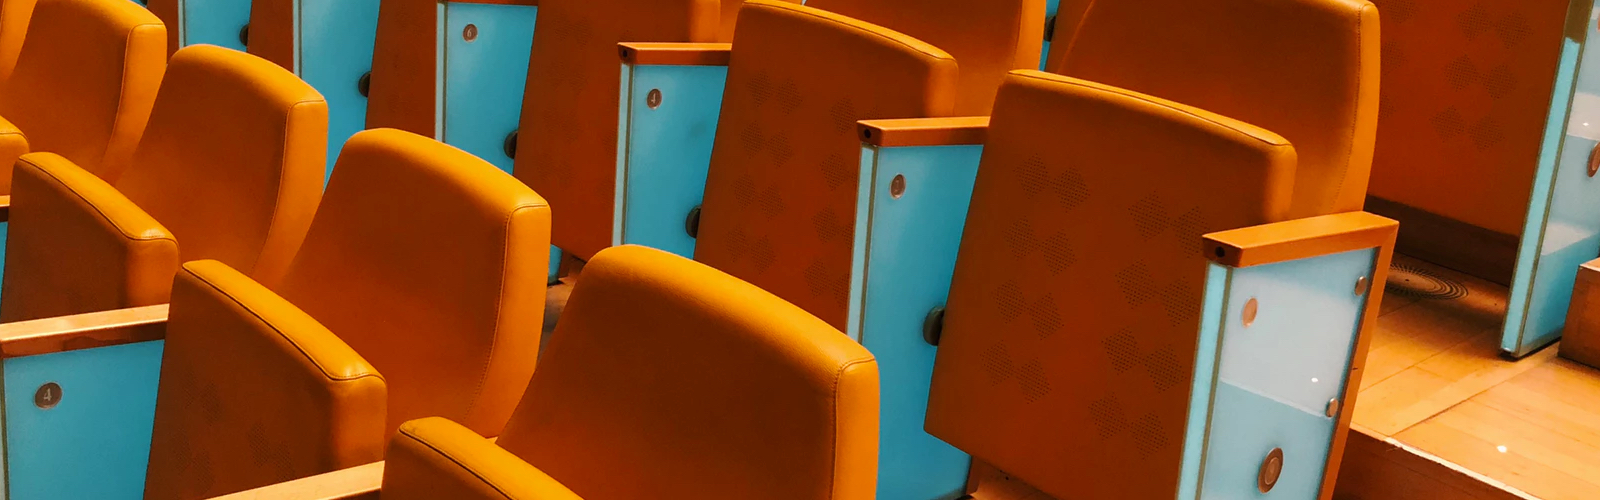 row of orange seats